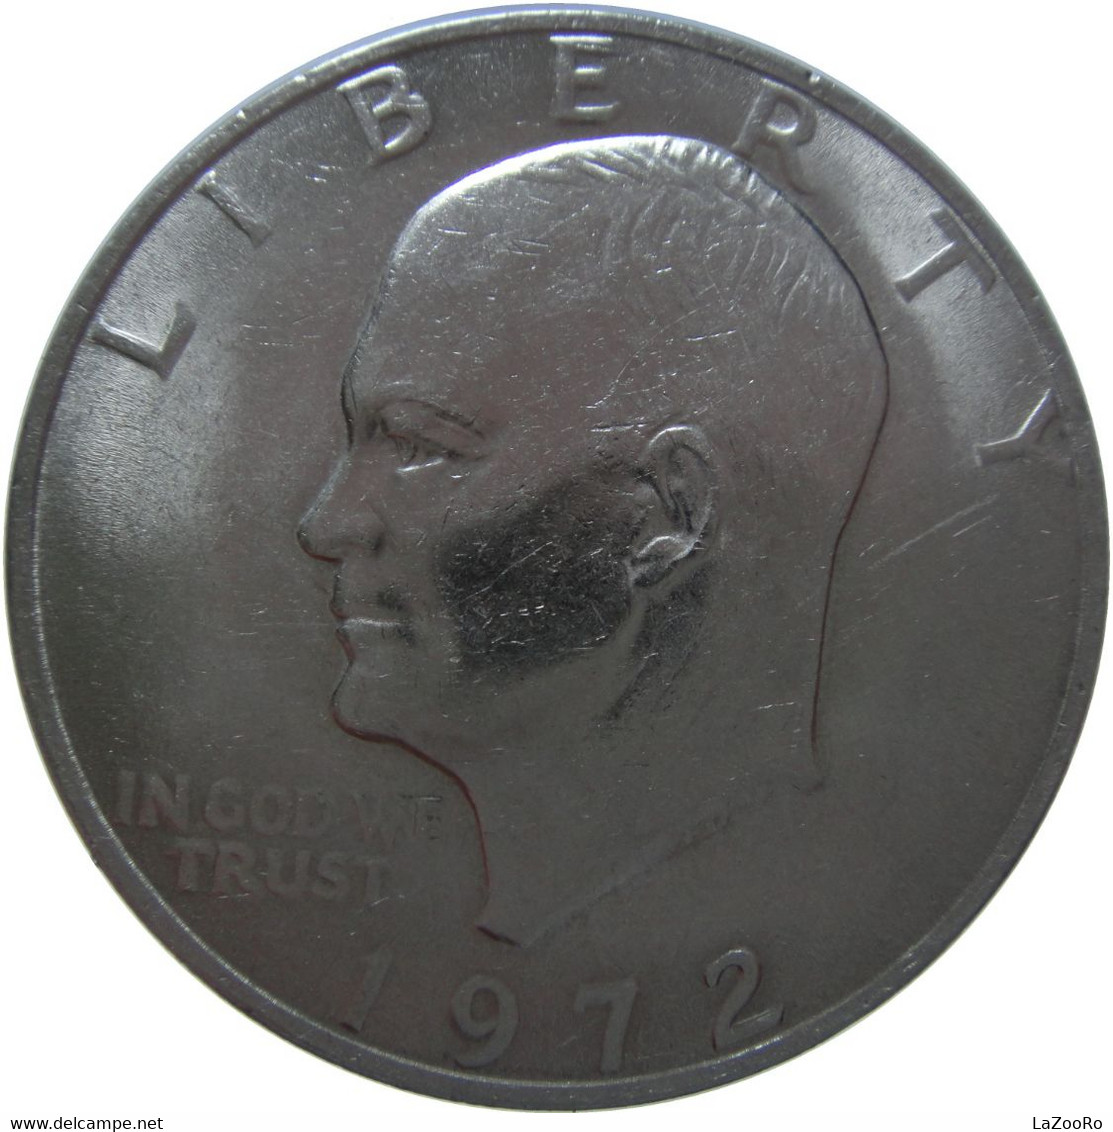 LaZooRo: United States 1 Dollar 1972 UNC - 1971-1978: Eisenhower